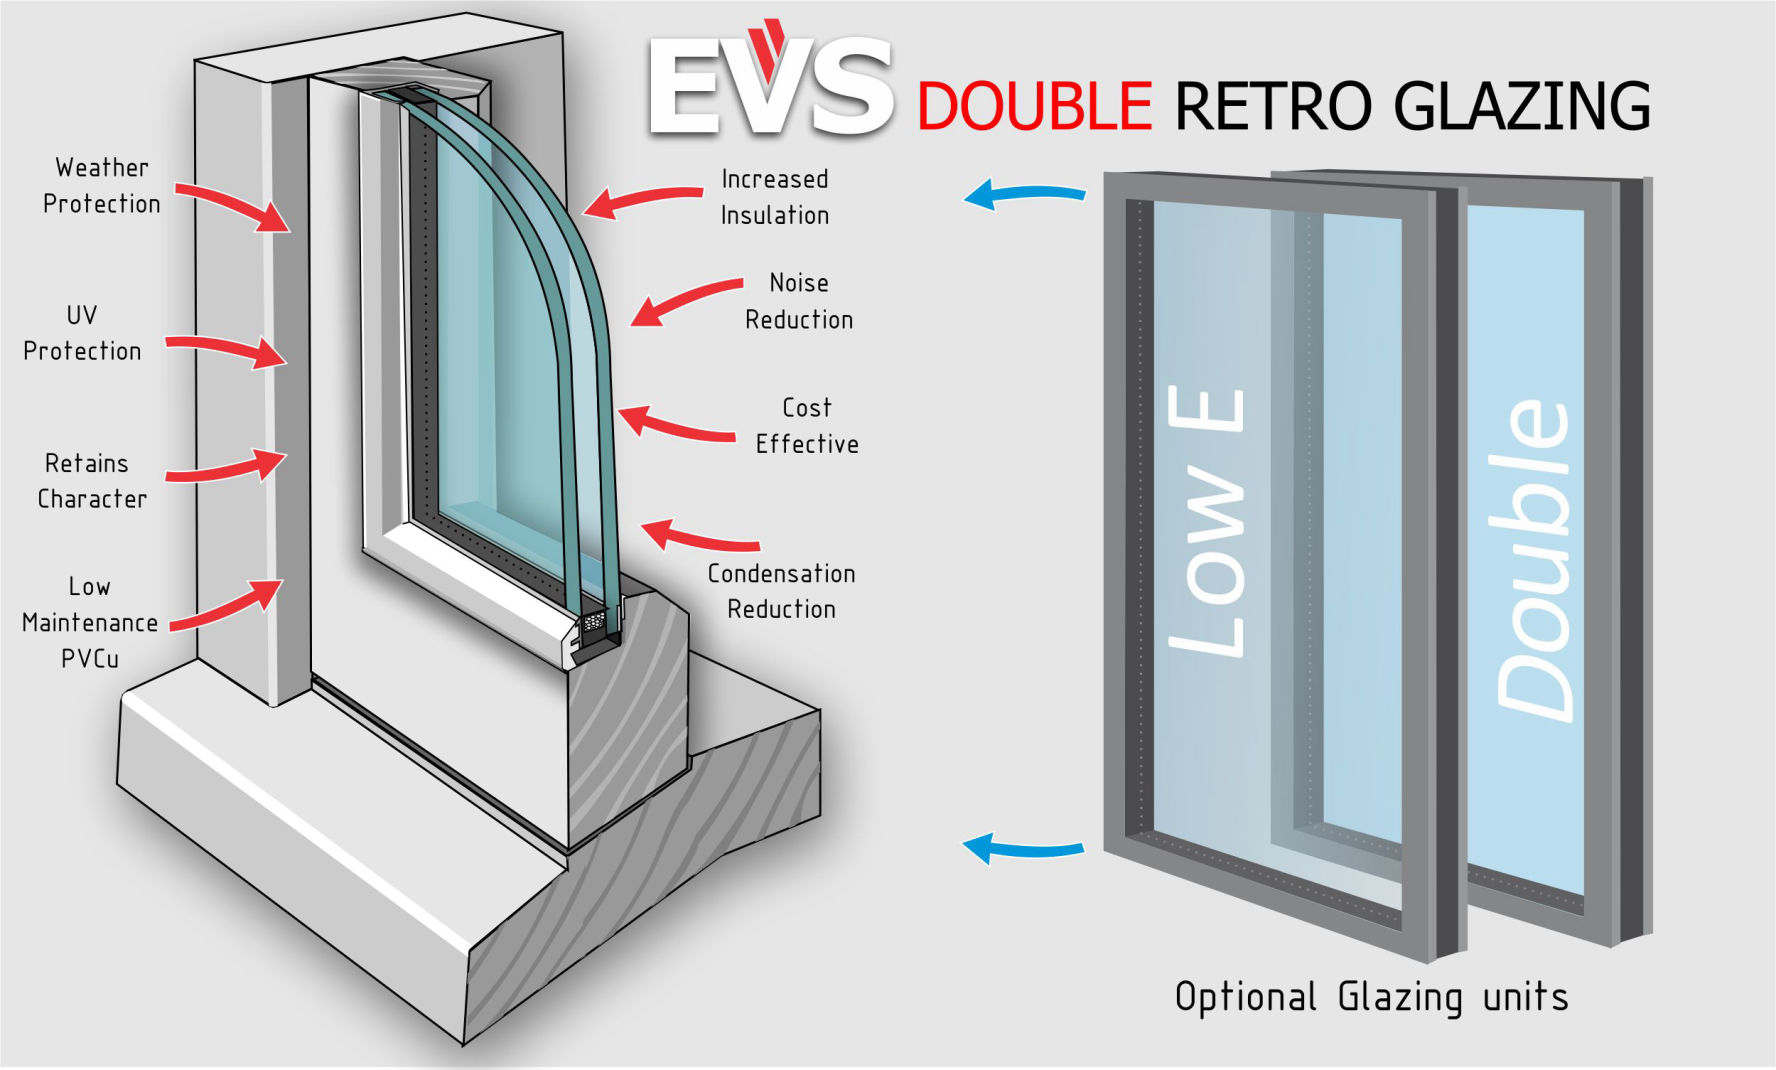 EVS Double Retro Glazing